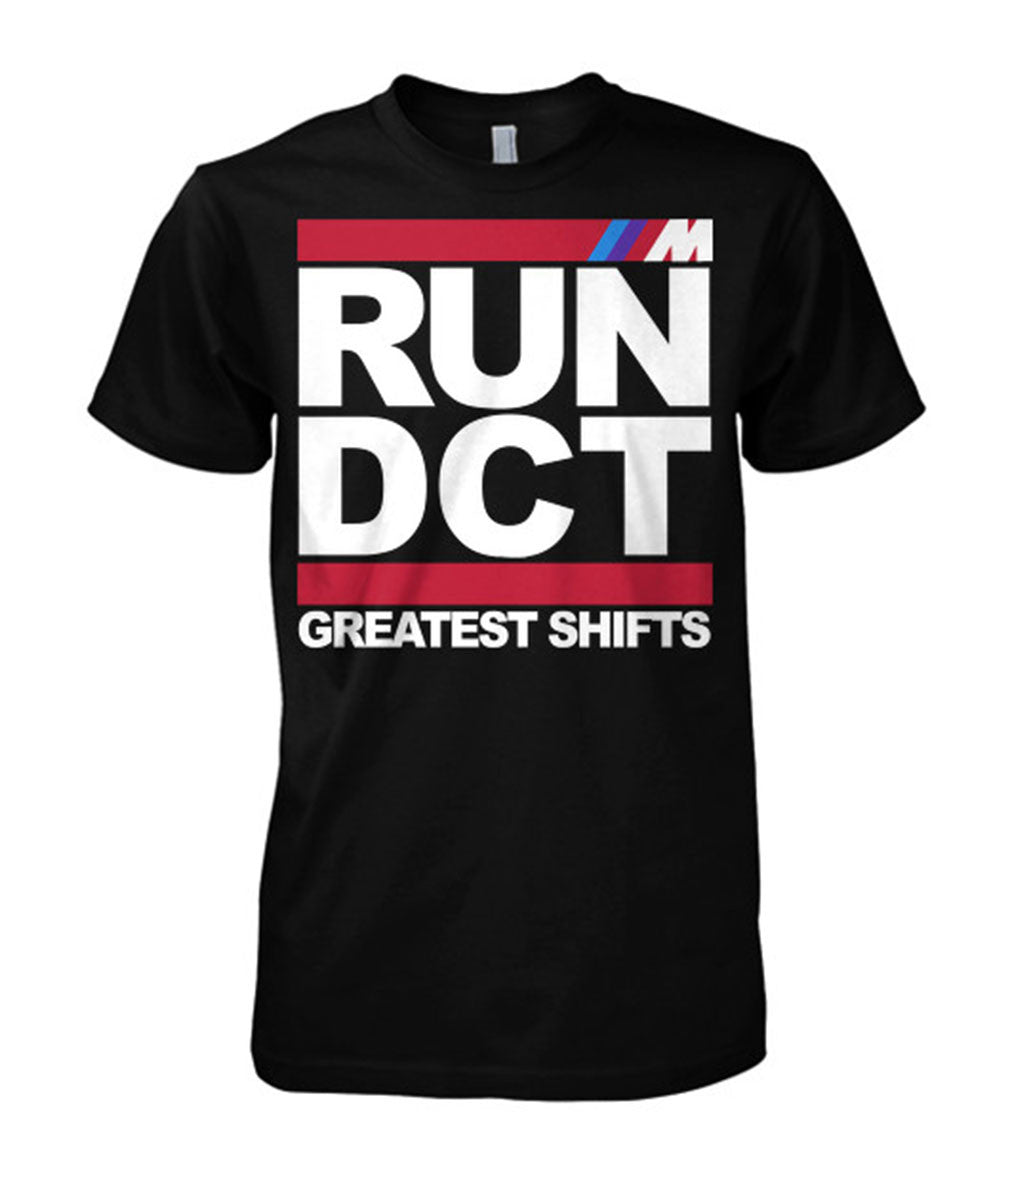 MODE "RUN DCT" T-Shirt - MODE Auto Concepts